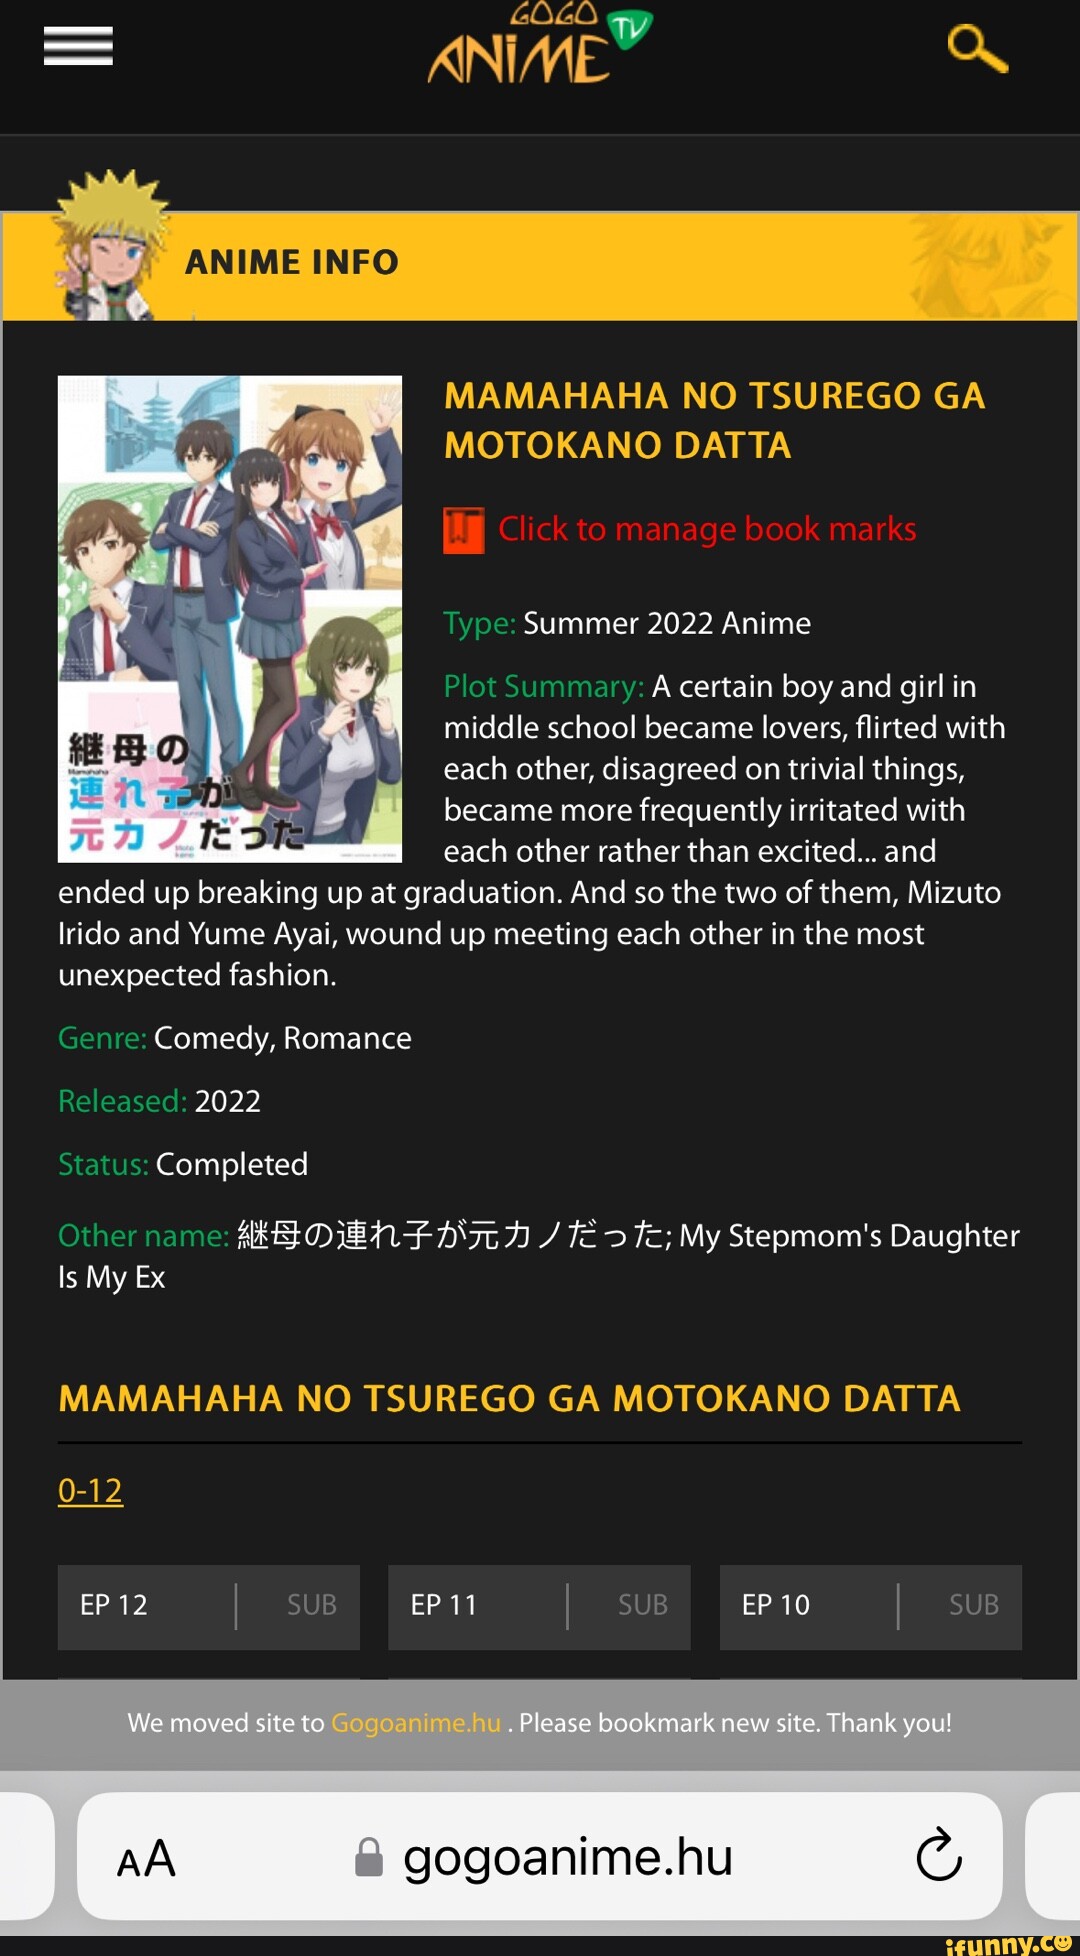 Top 10 Anime Like Mamahaha no Tsurego ga Motokano datta 